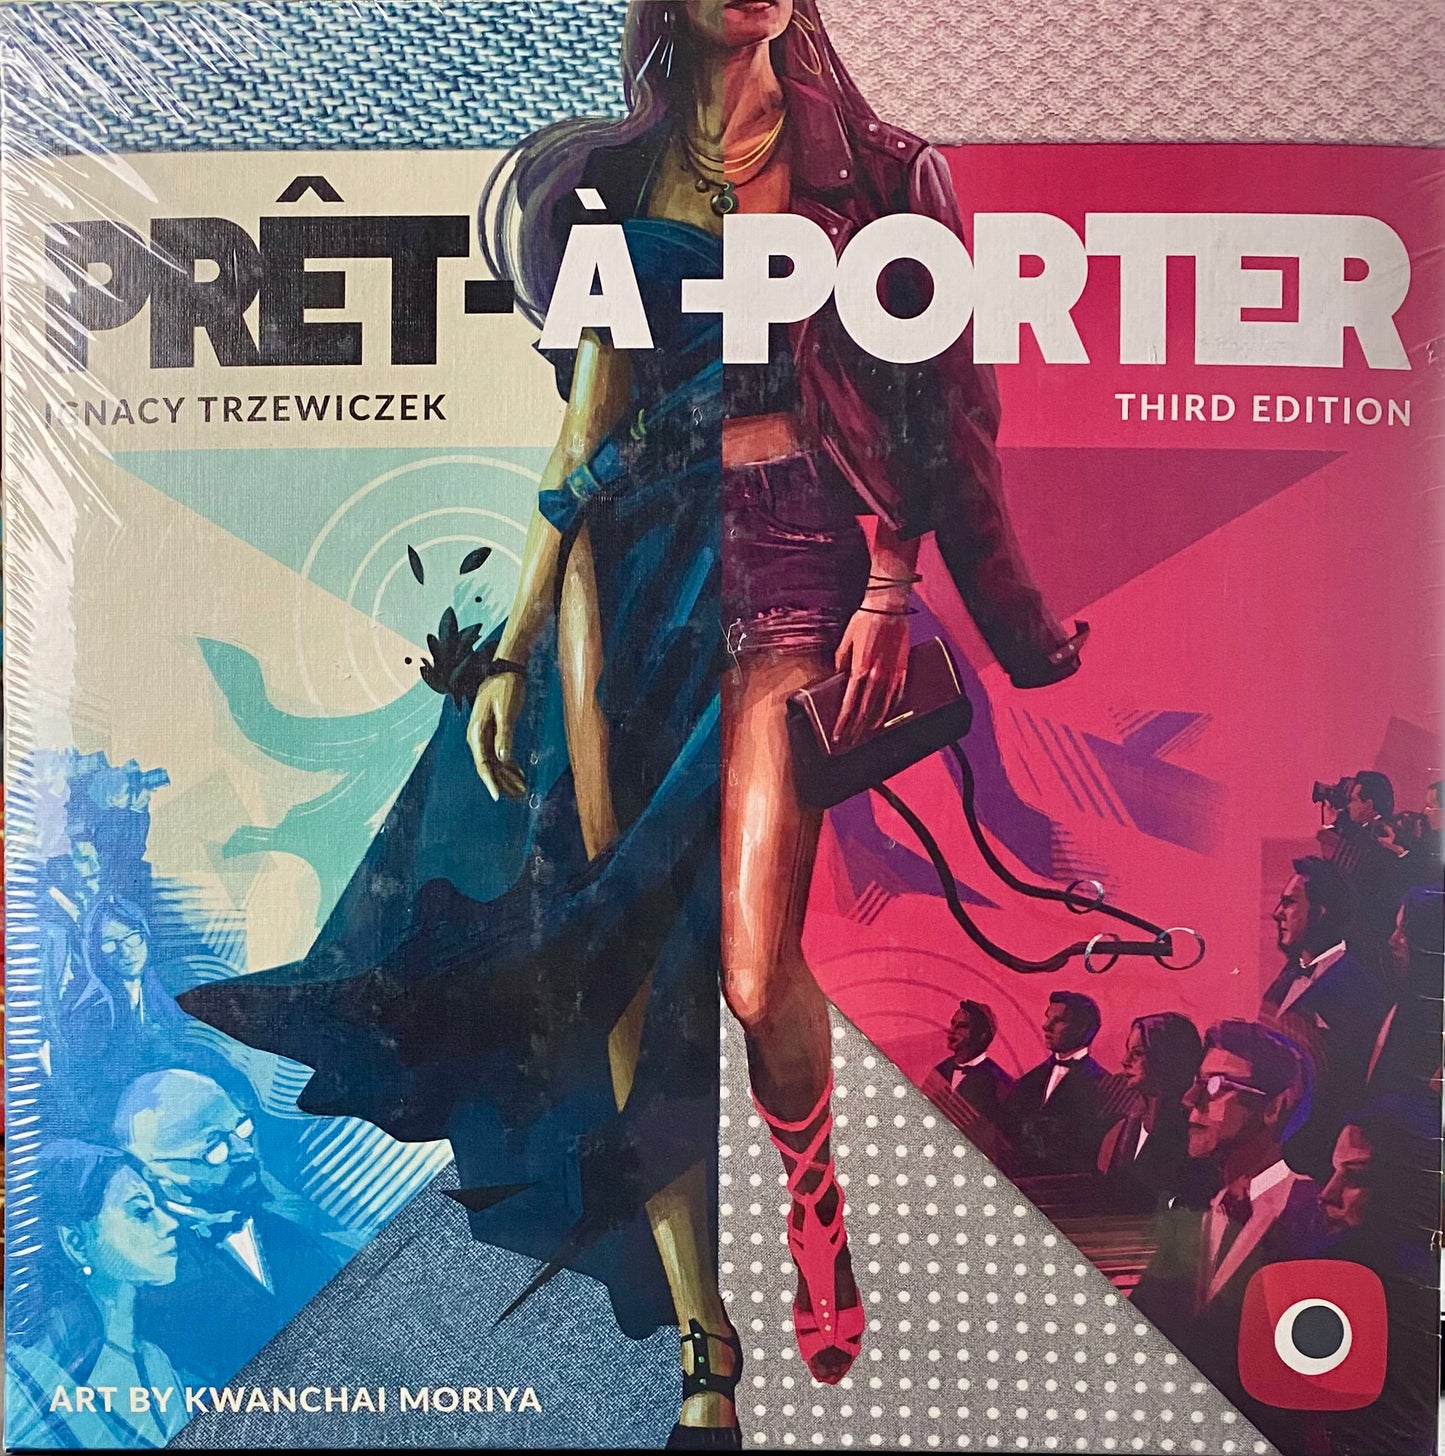 Pret-a-Porter (Third Edition)